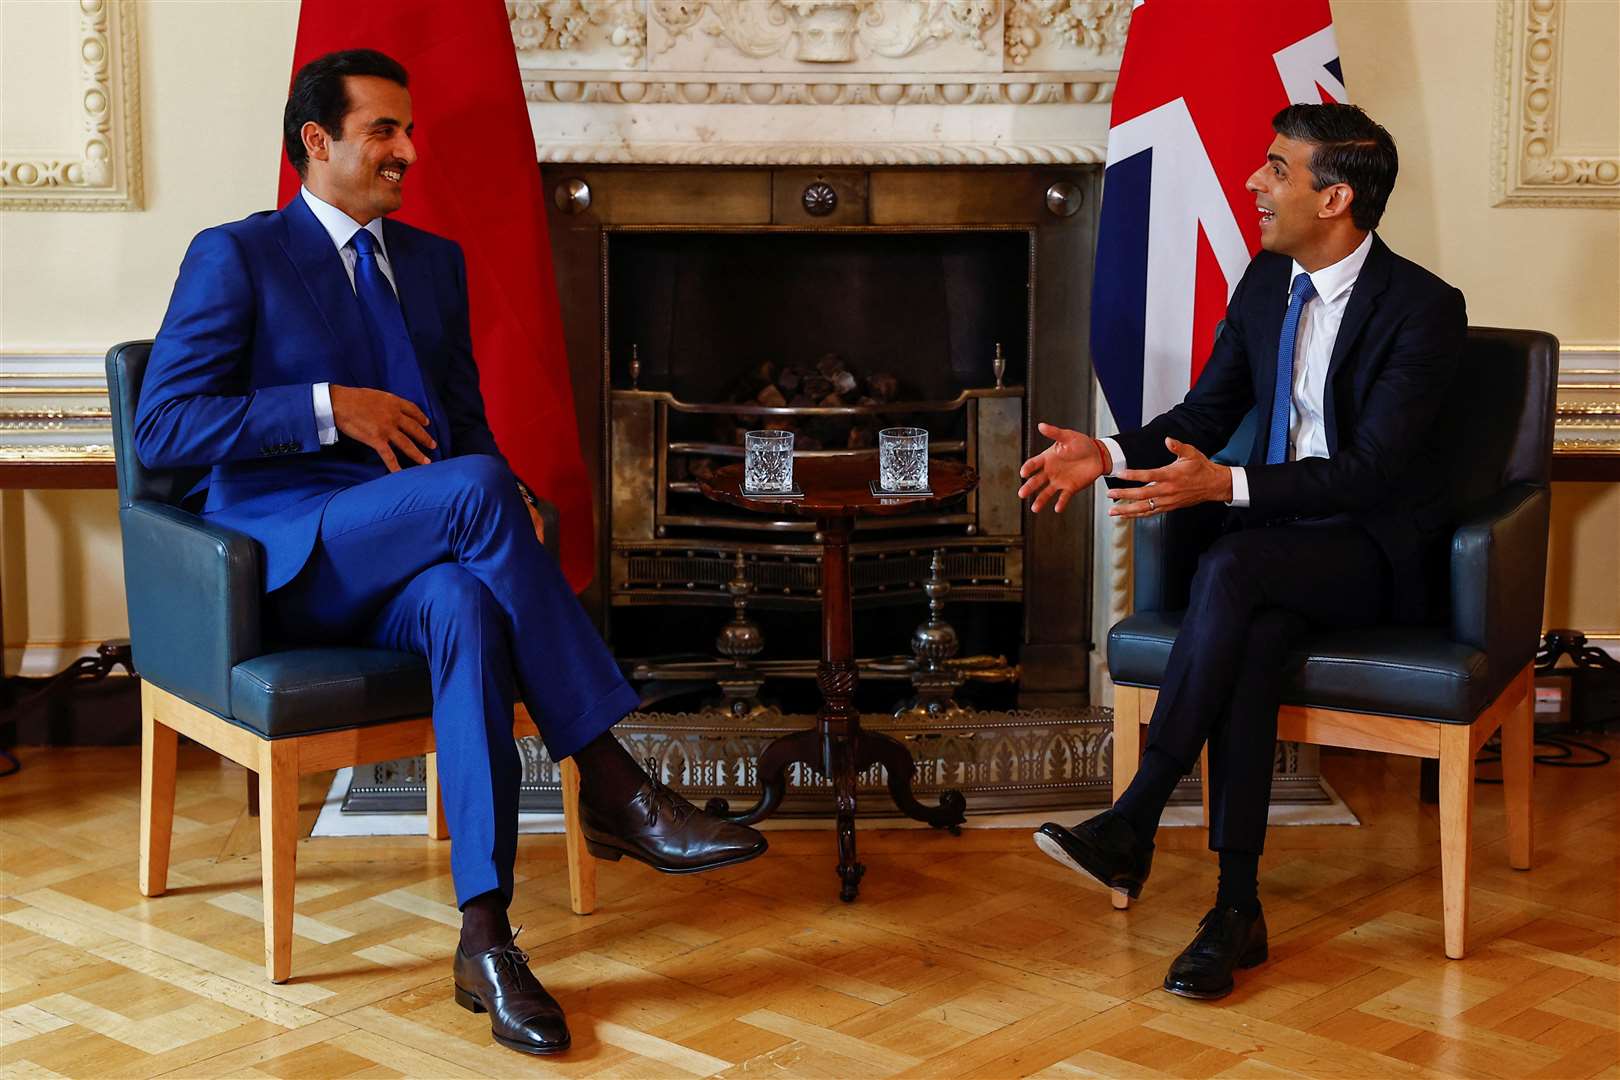 Prime Minister Rishi Sunak meets the Emir of Qatar, Sheikh Tamim bin Hamad Al Thani at 10 Downing Street (Peter Nicholls/PA)